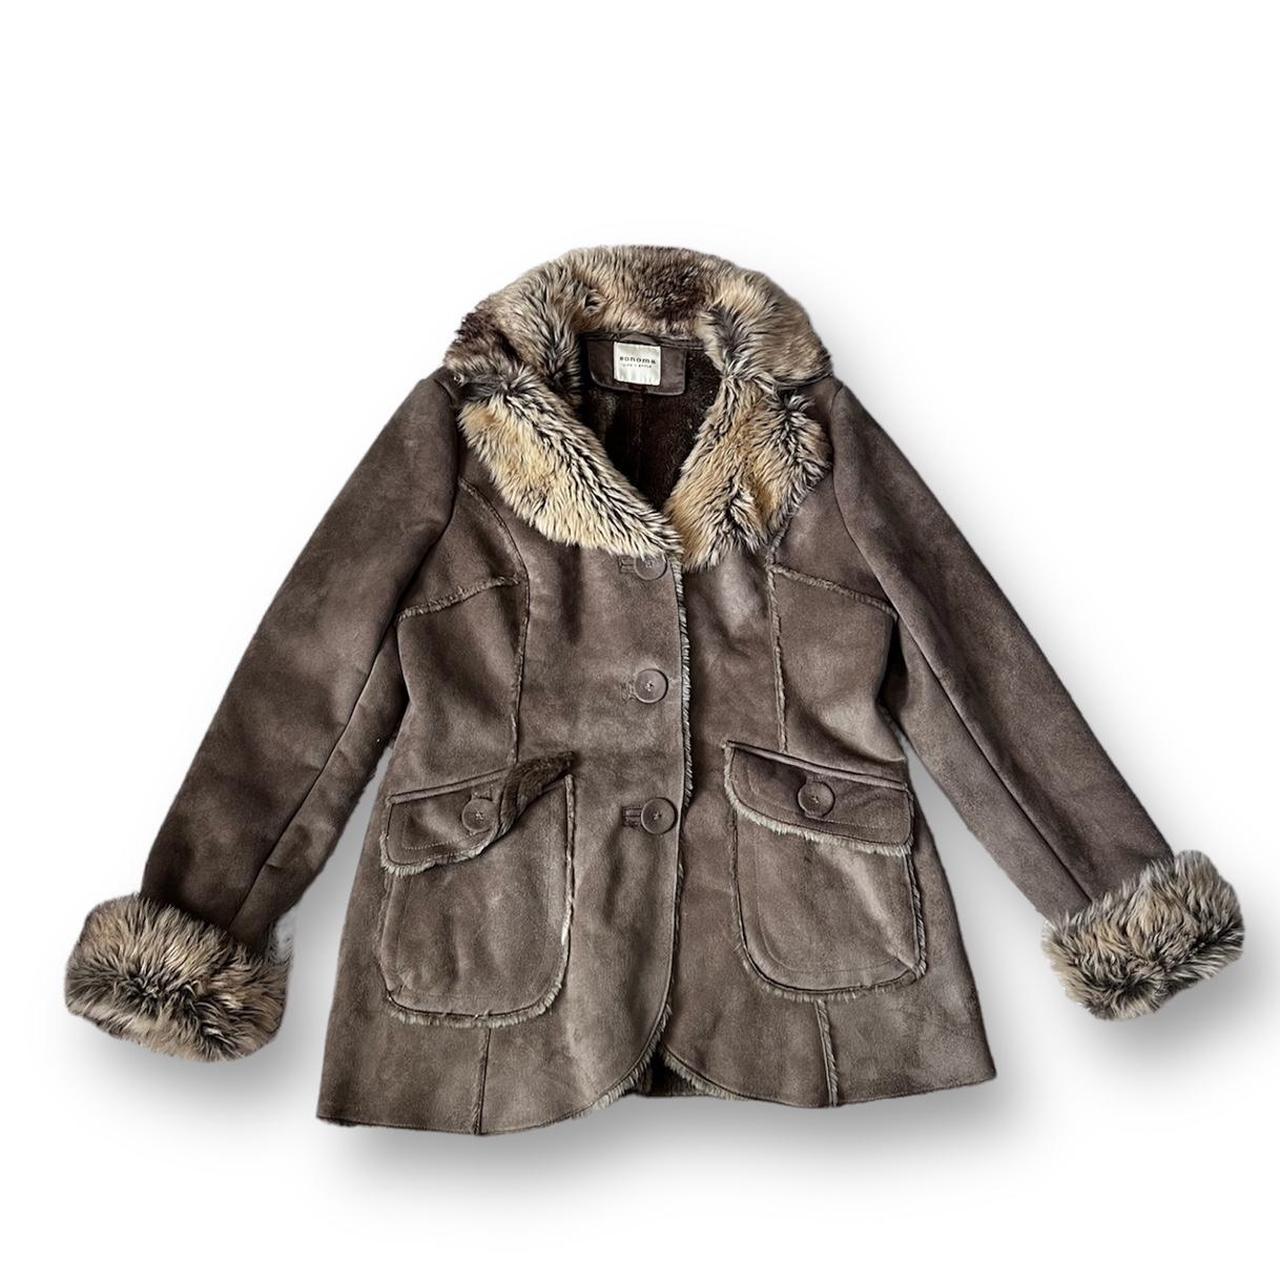 Y2k grey brown fur coat / penny lane afghan coat... - Depop